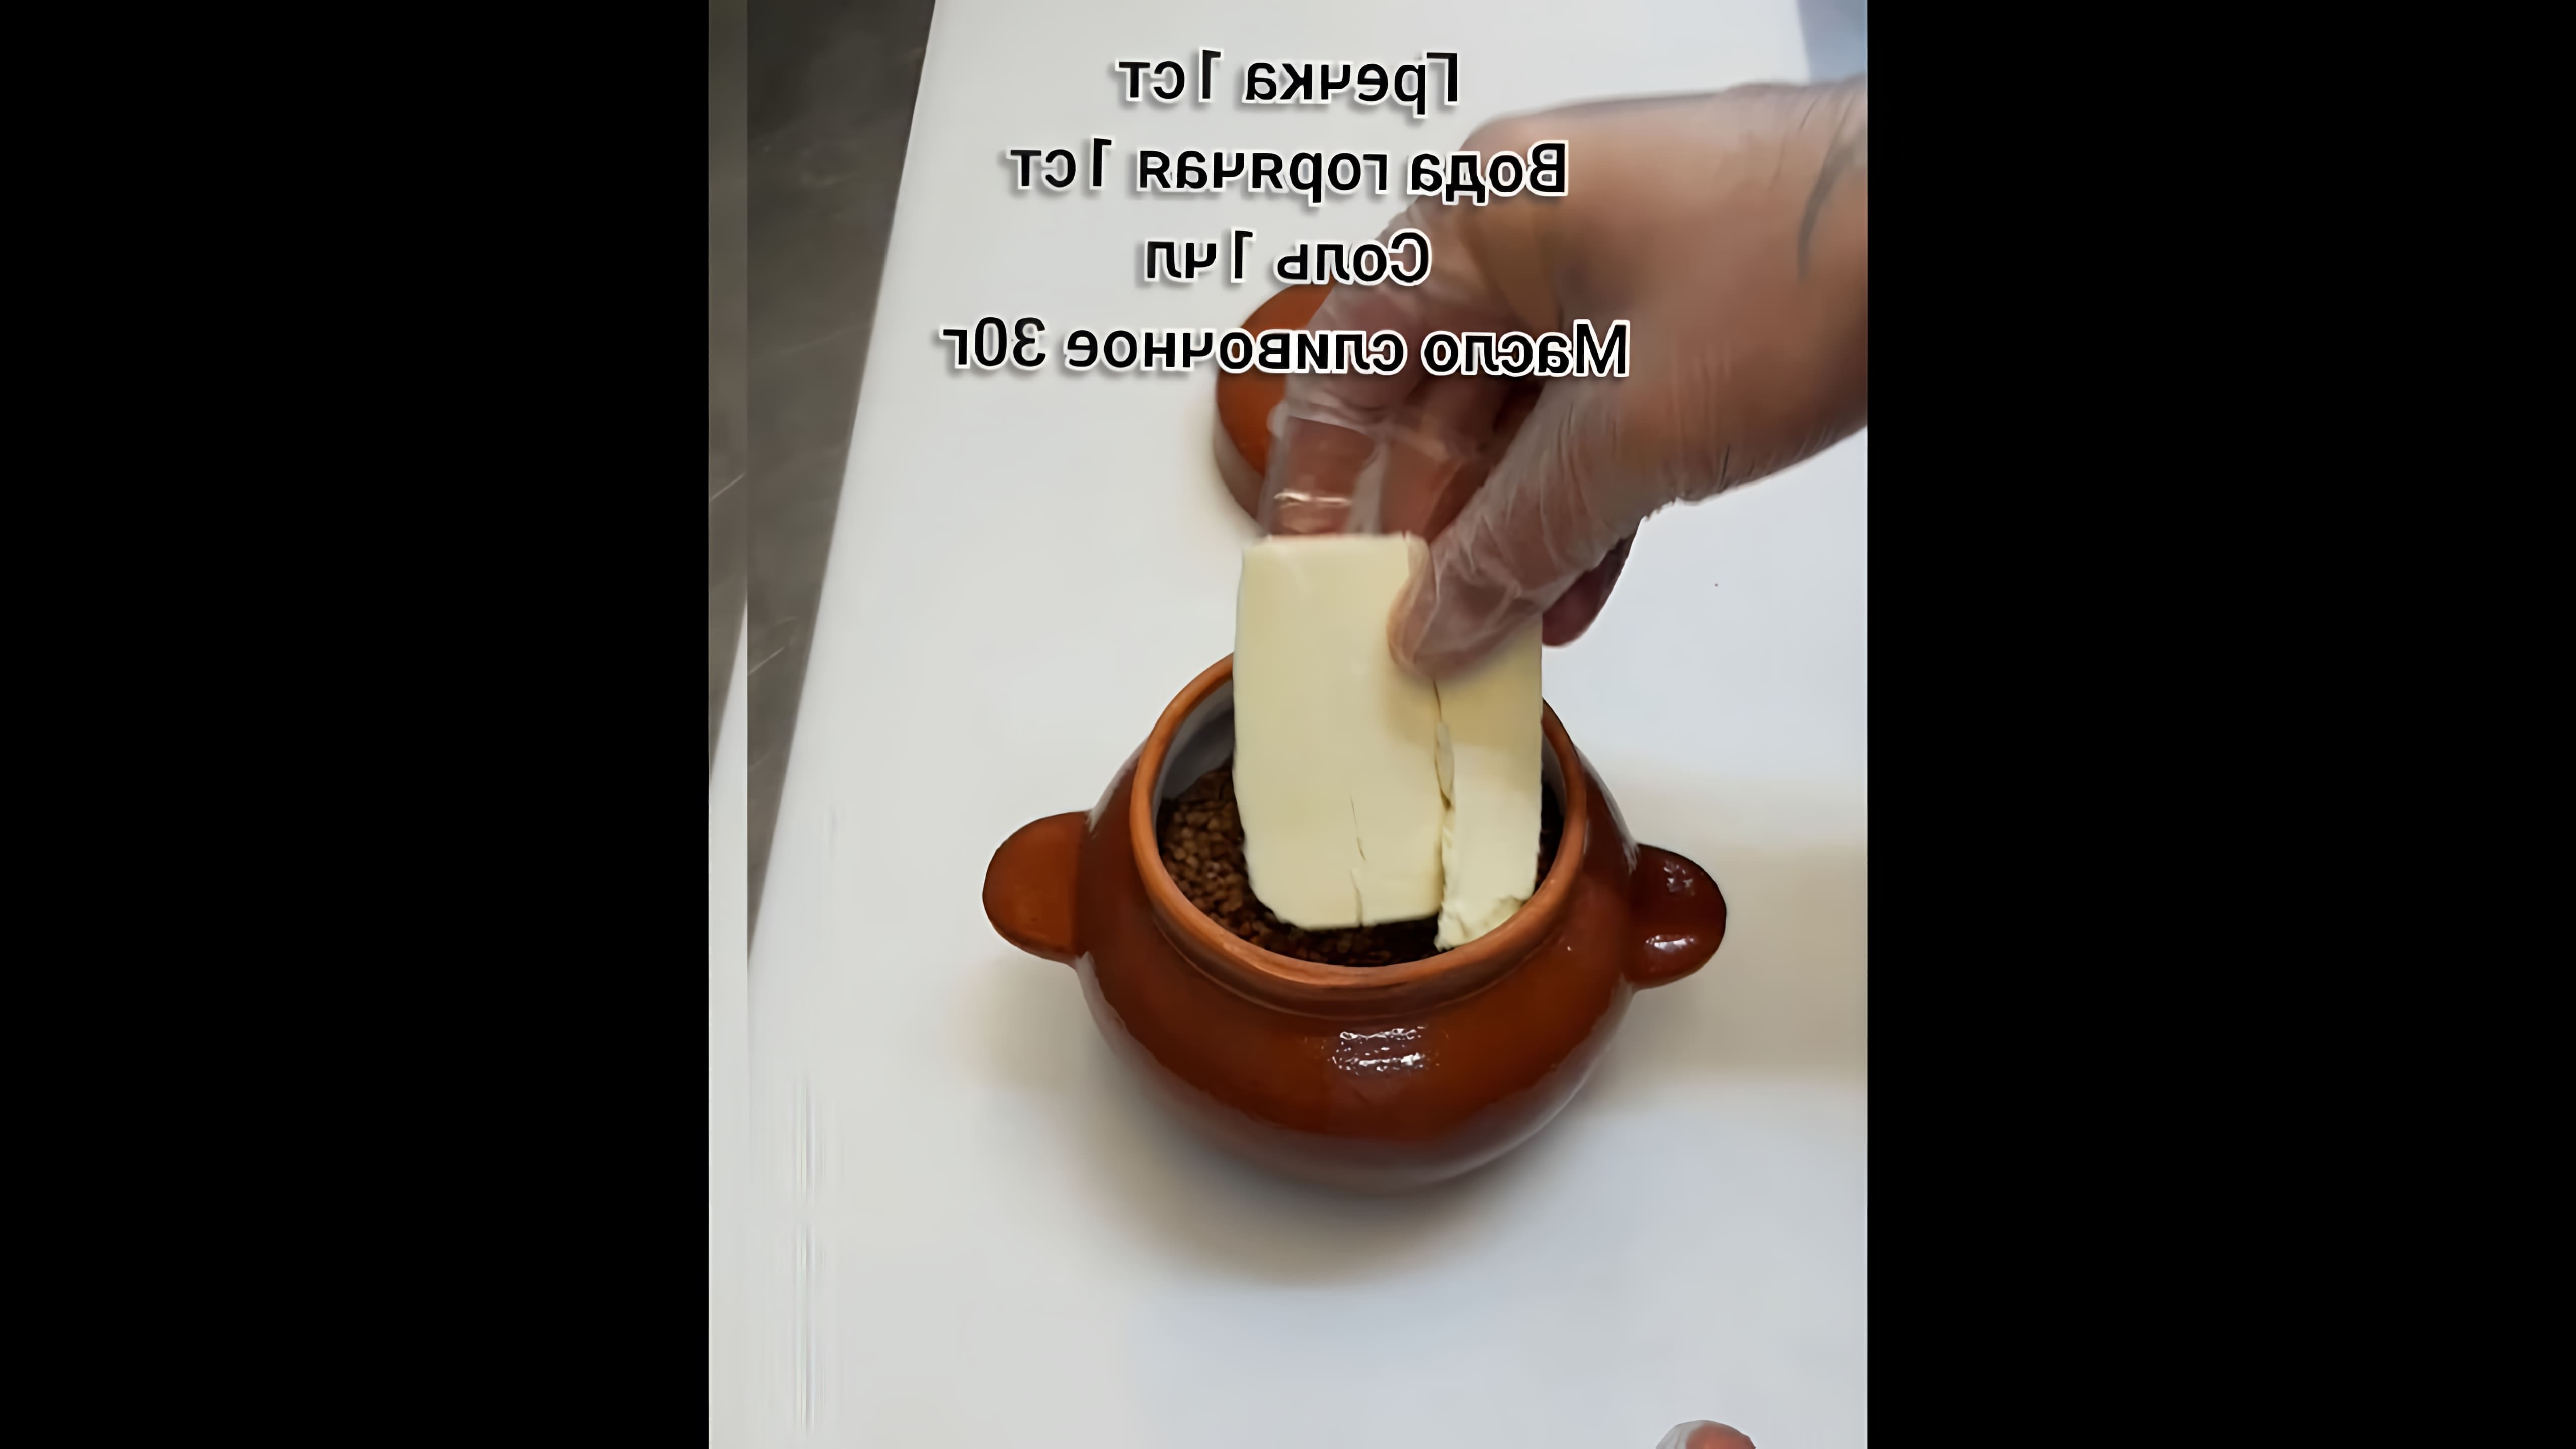 В этом видео демонстрируется простой и вкусный способ приготовления гречки в глиняном горшочке